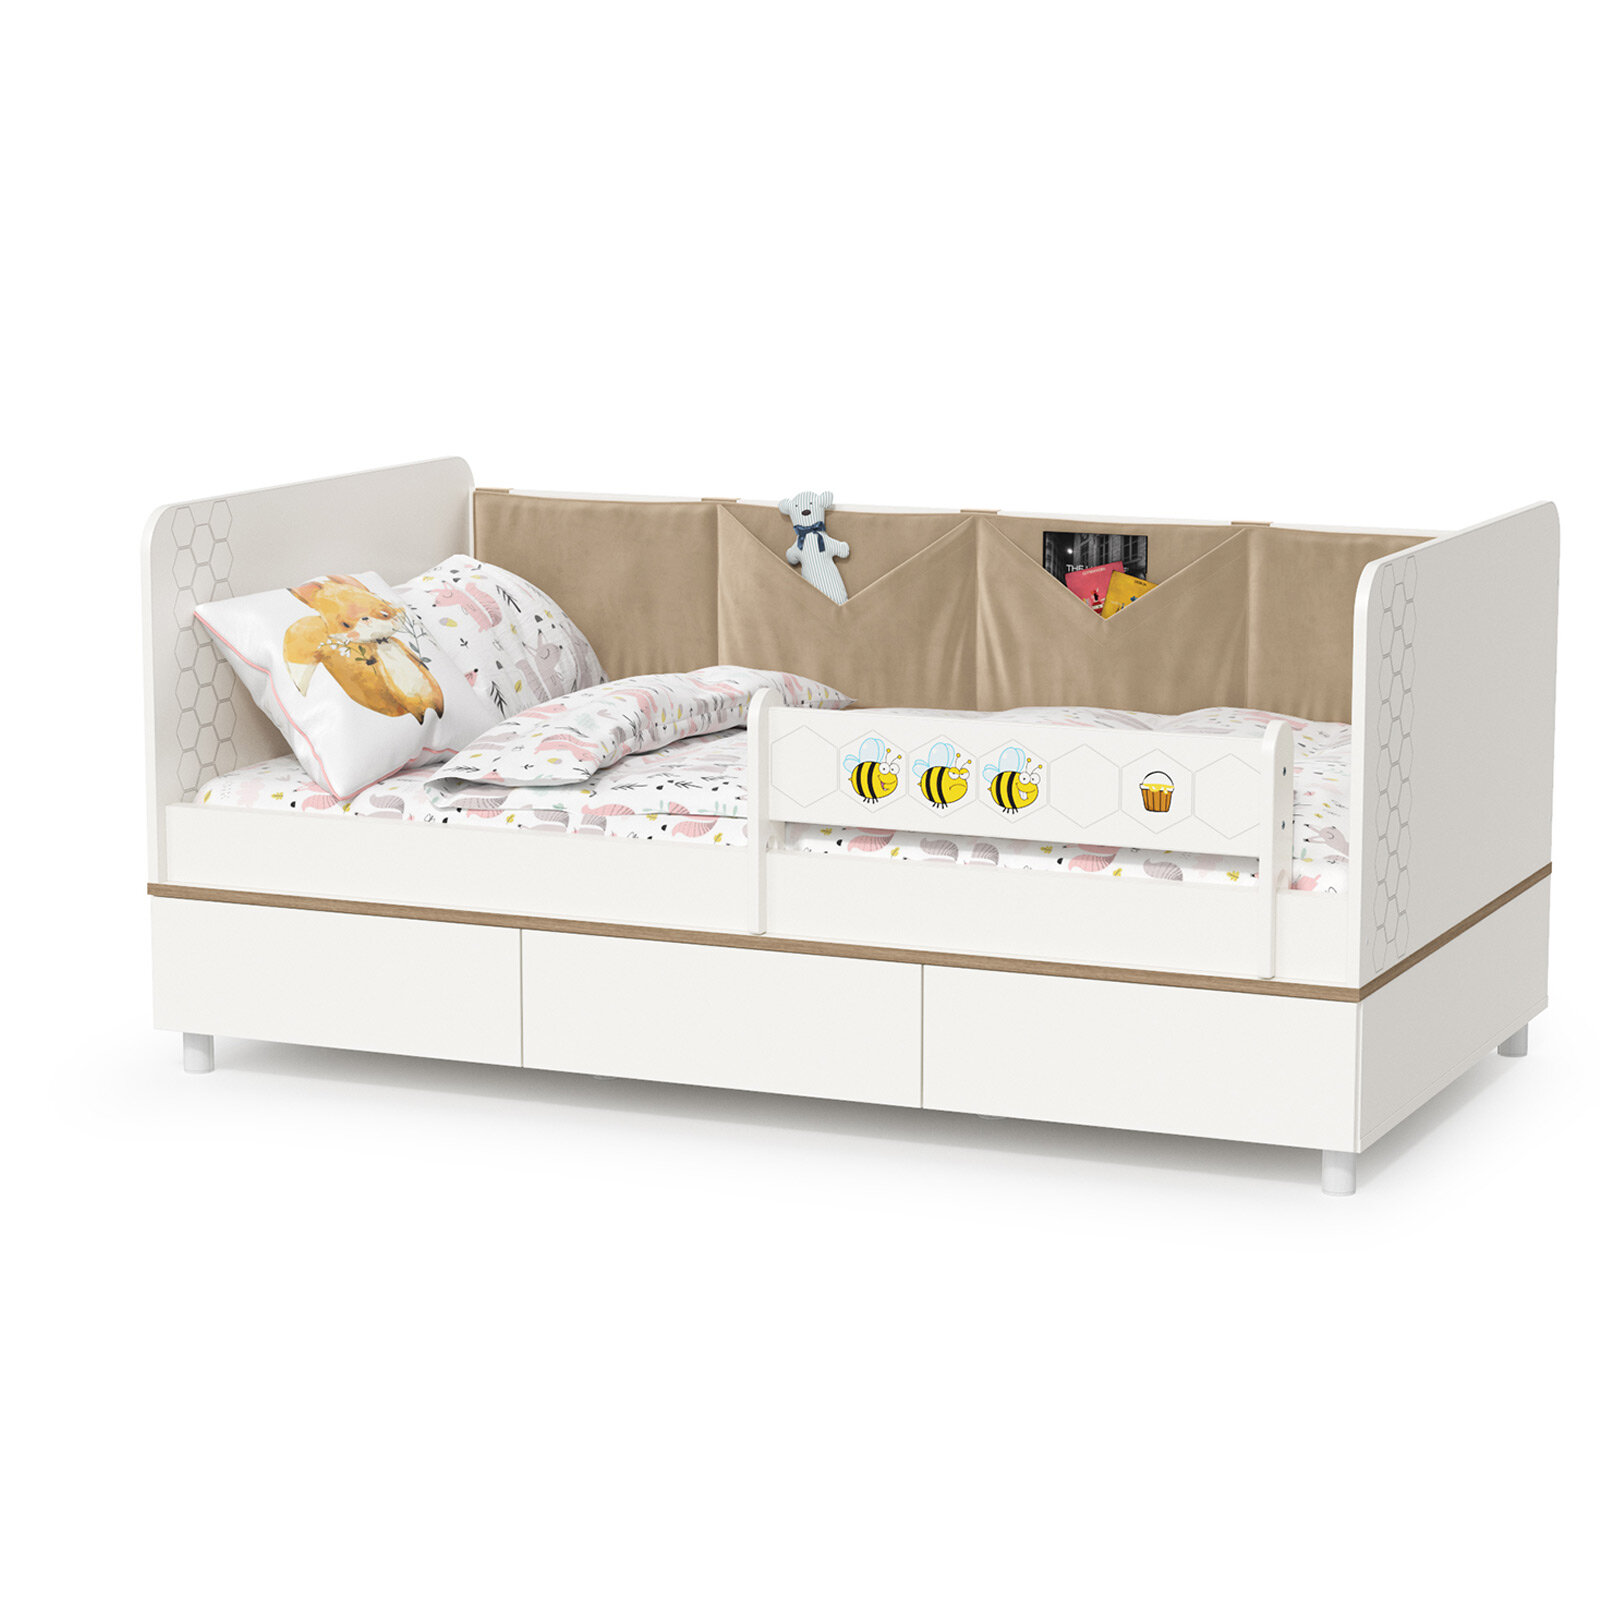 Детская кровать с ящиками Эйп 11.40 цвет белый/дуб белый ШхГхВ 1642х897х75 см спальное место 800х1600 мм без матраса